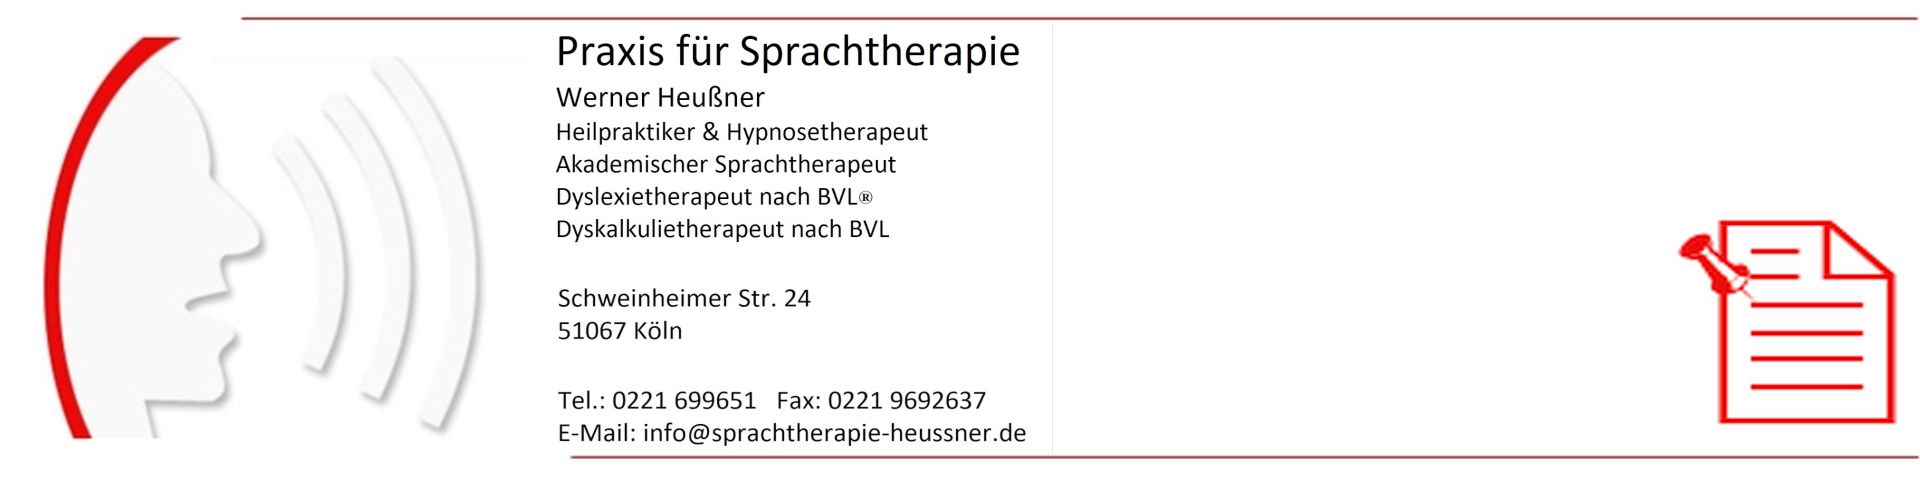 Praxis für Sprachtherapie Werner Heußner Köln